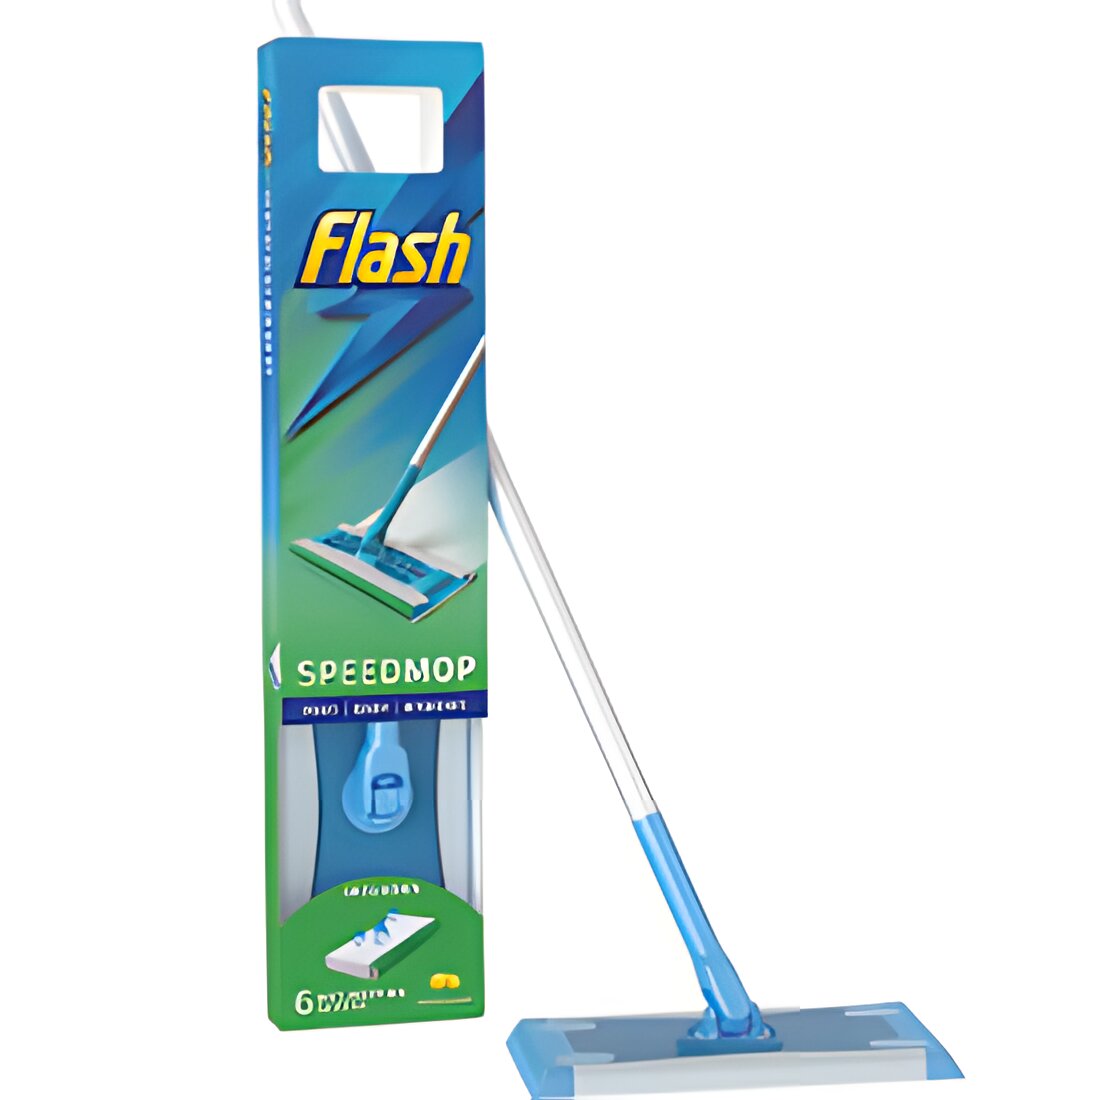 Free Flash Speedmop Floor Cleaning Samples